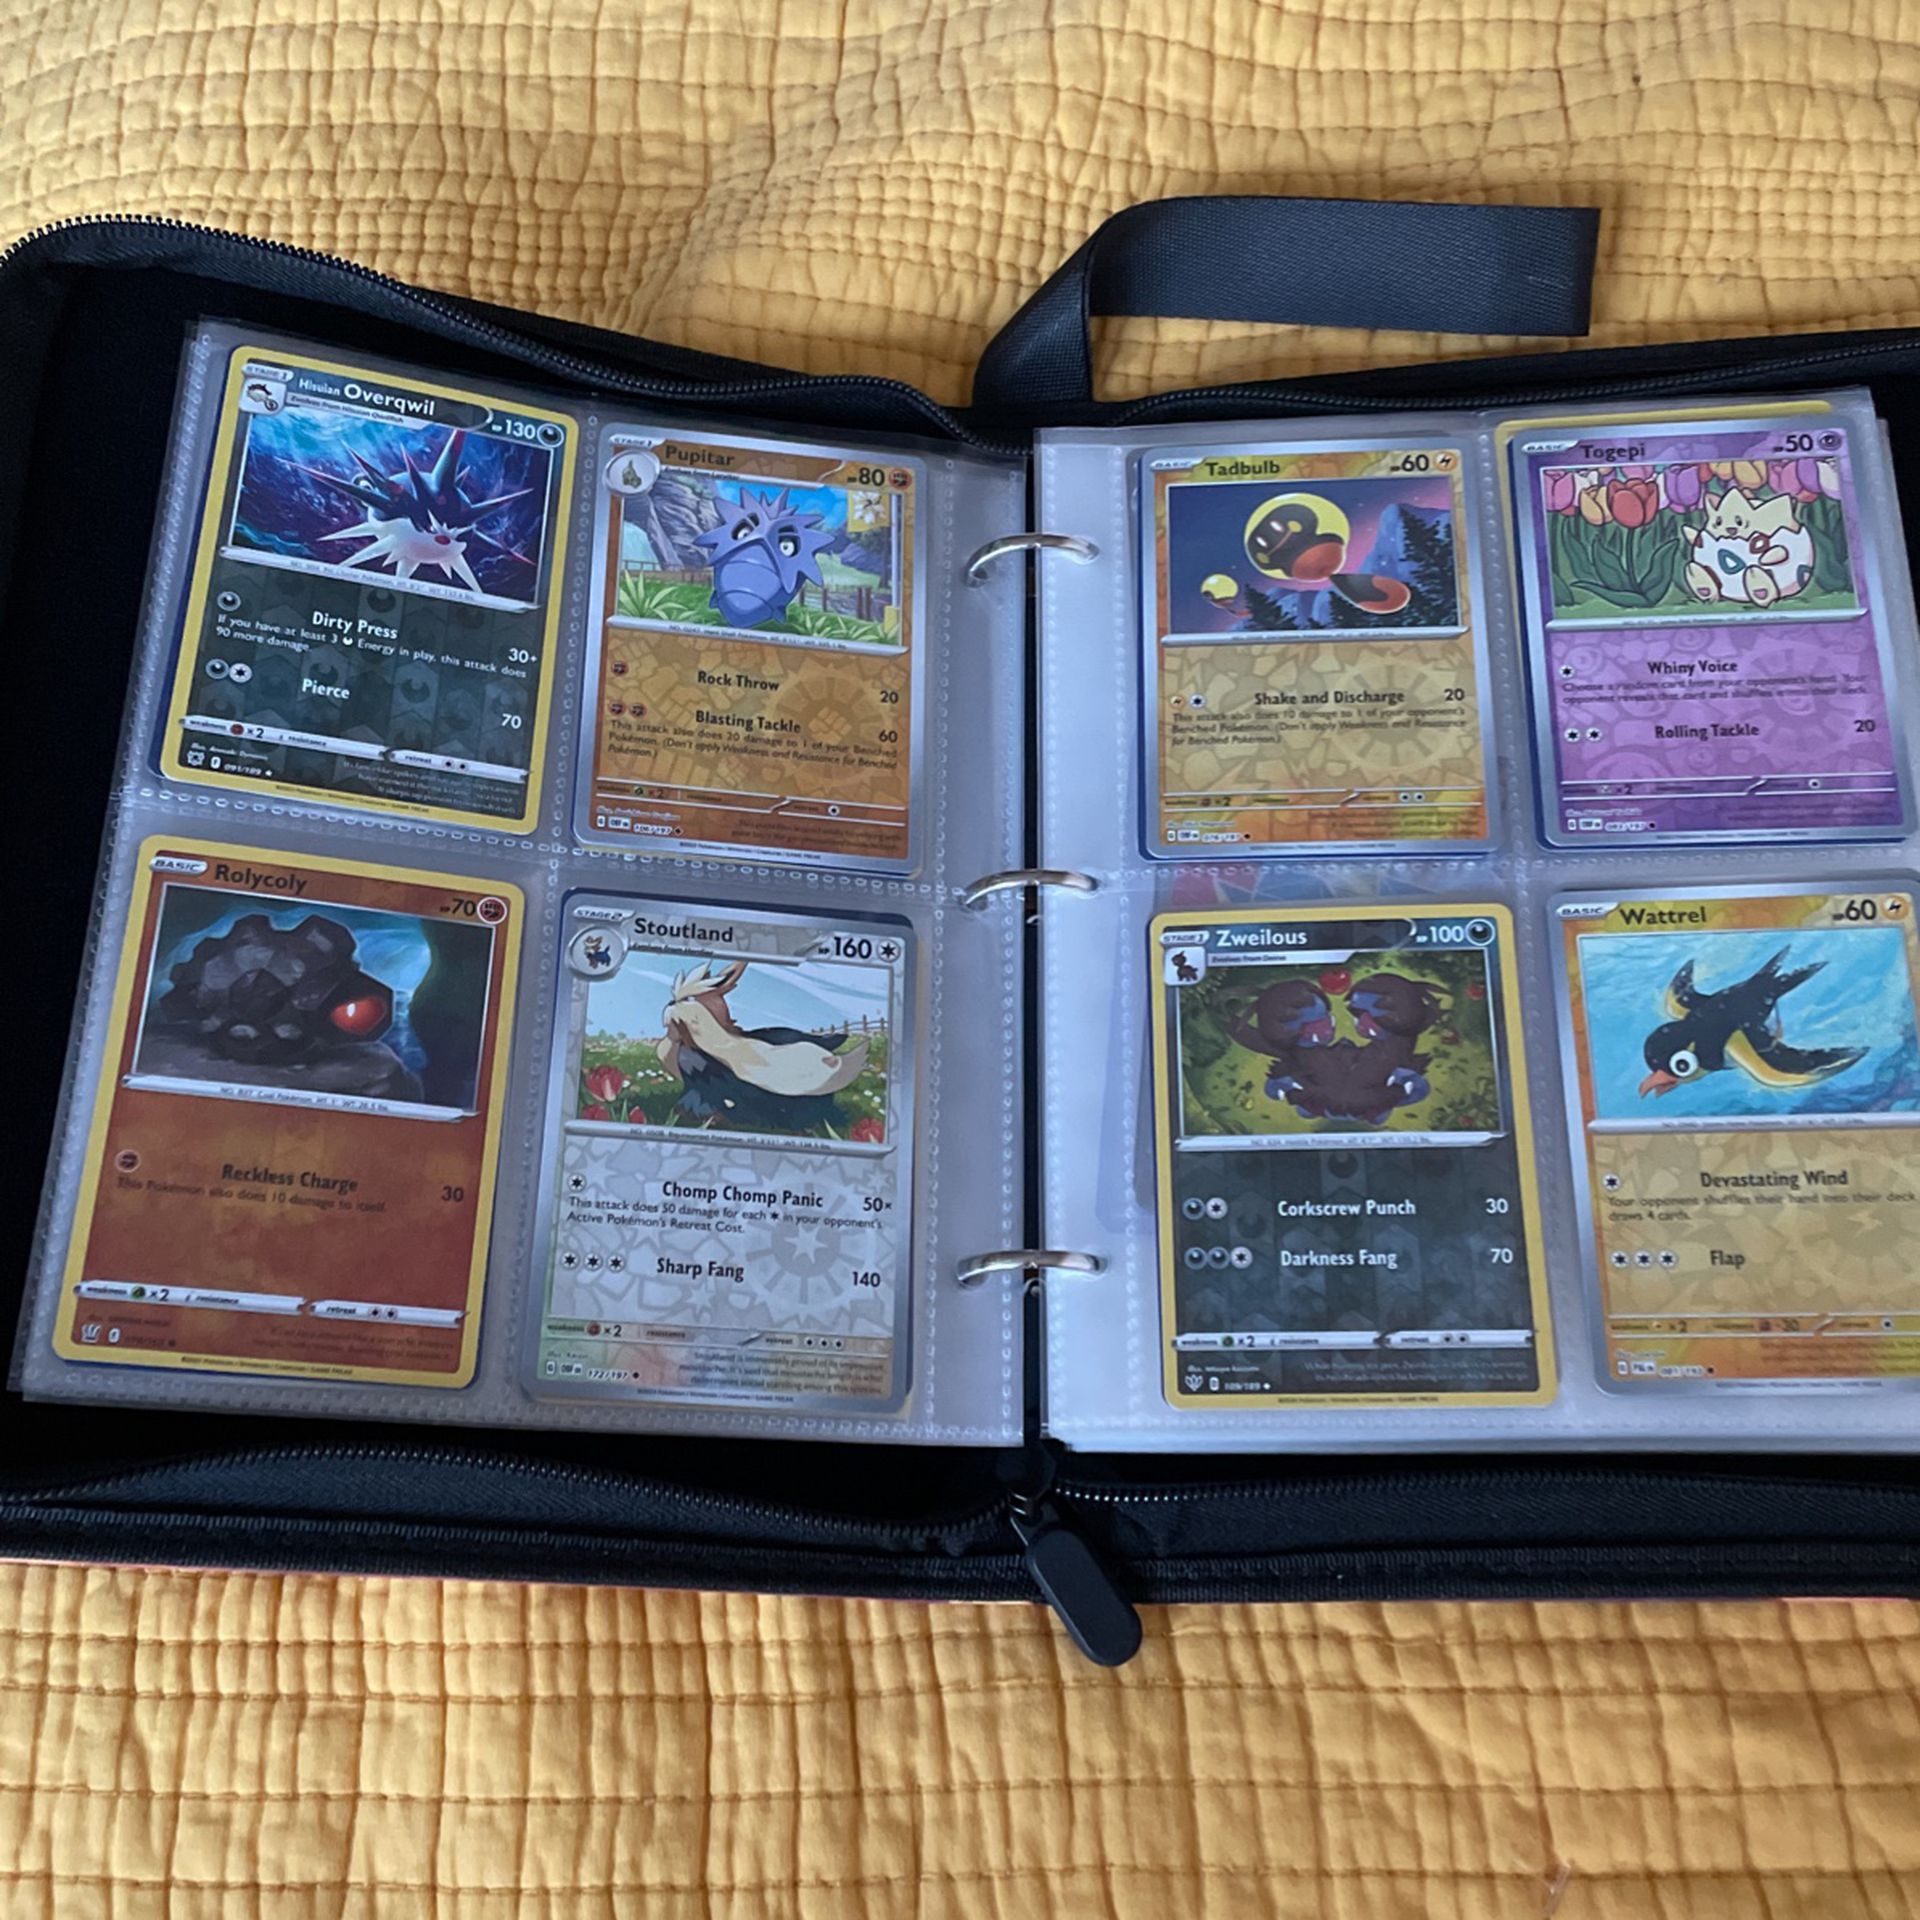 Shiny Pokémon Cards